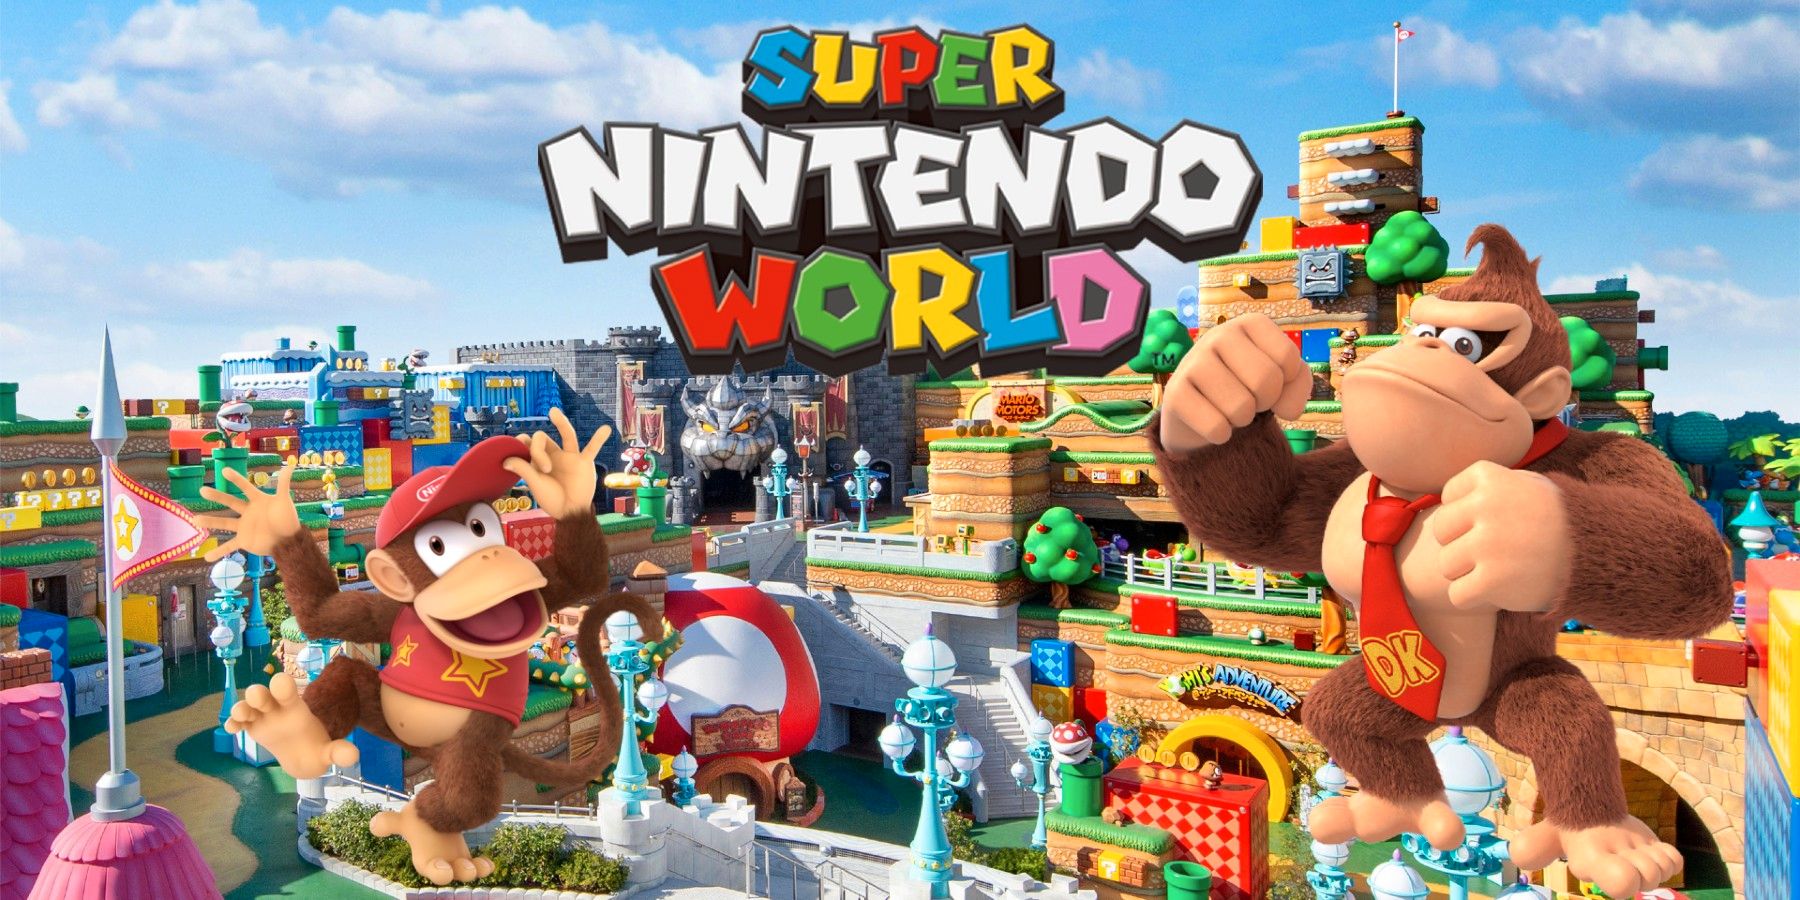 Svět Super Nintendo potvrzuje expanzi Donkey Kong